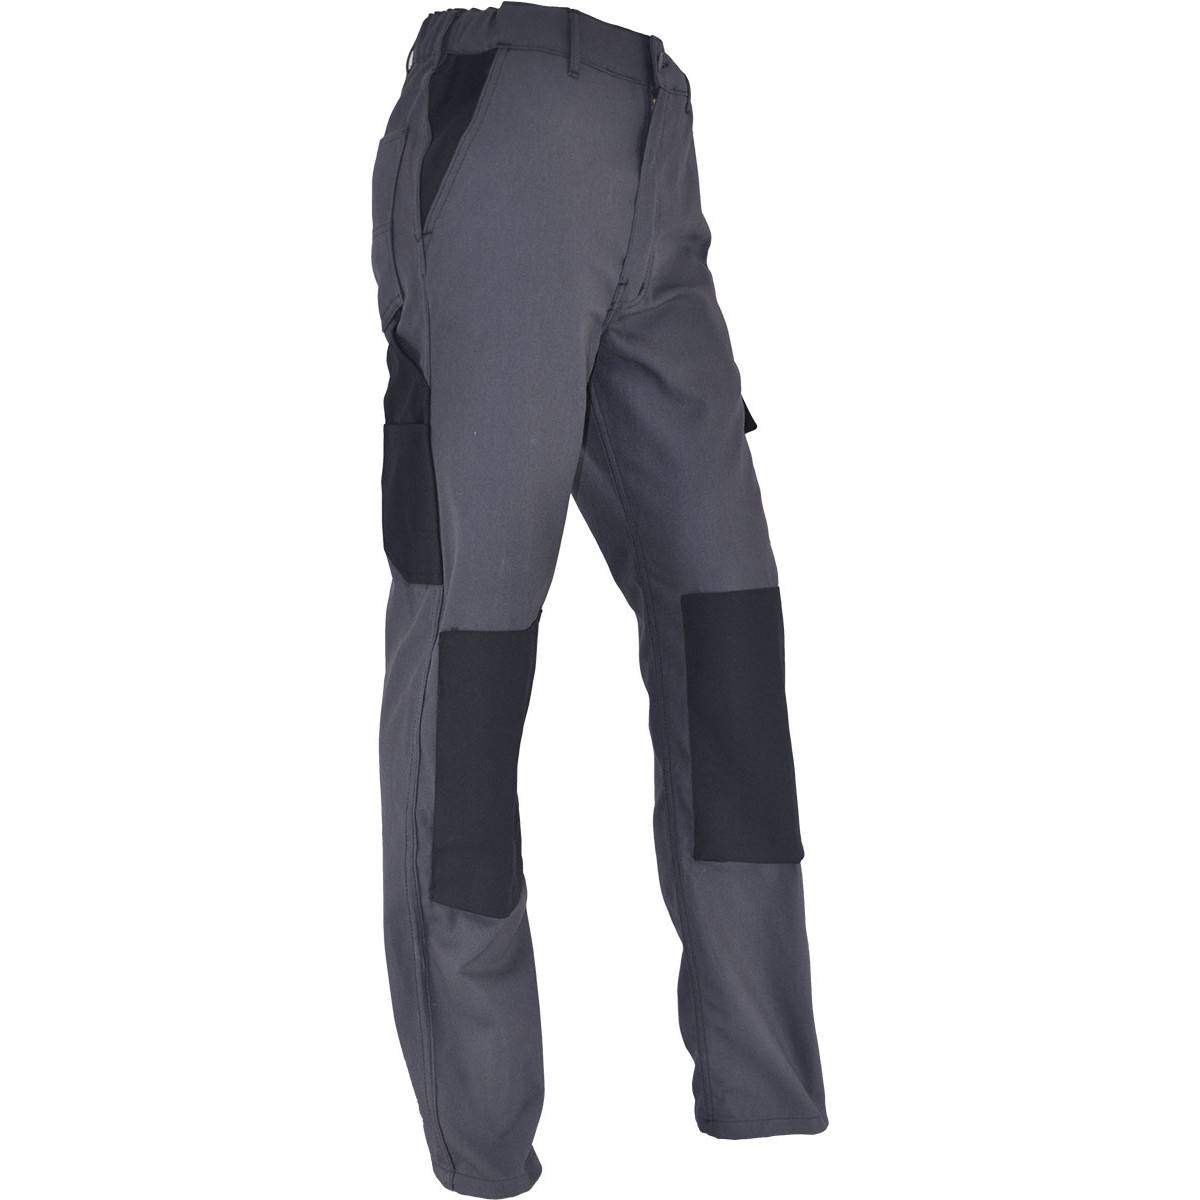 Pantalones de trabajo cómodos PMPC talla 40, gris antracita